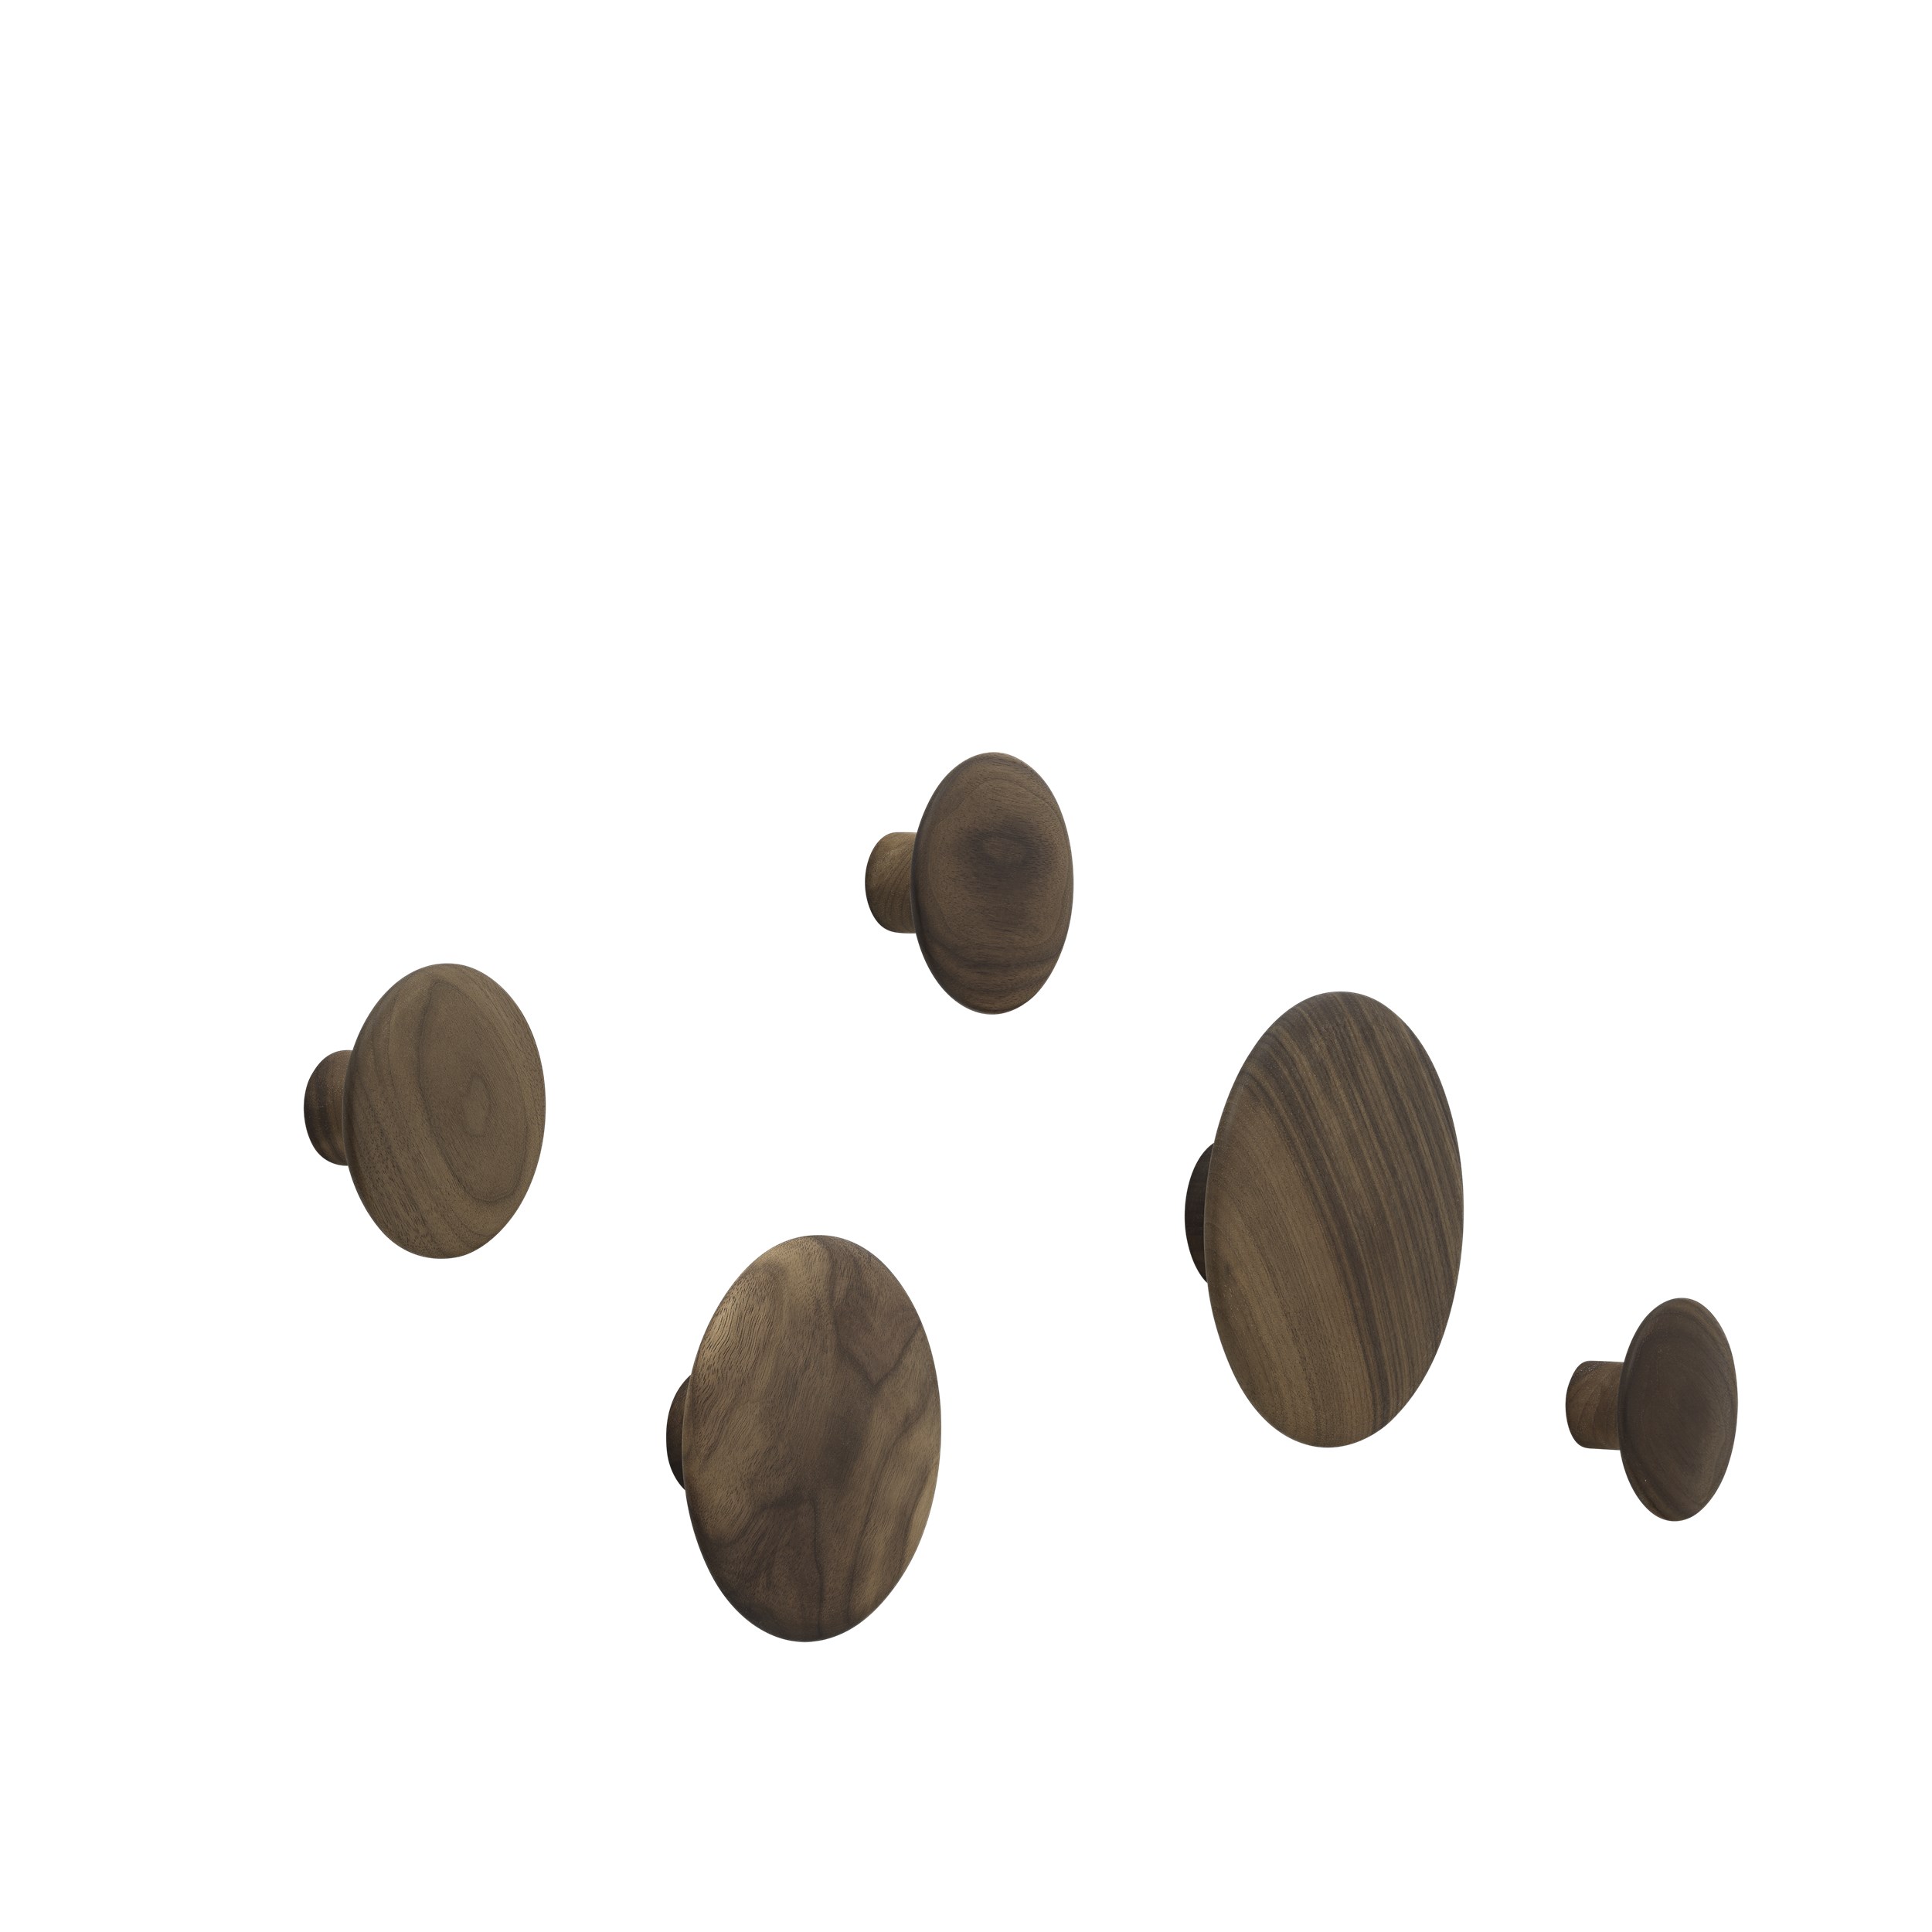 The dots set of 5 walnut